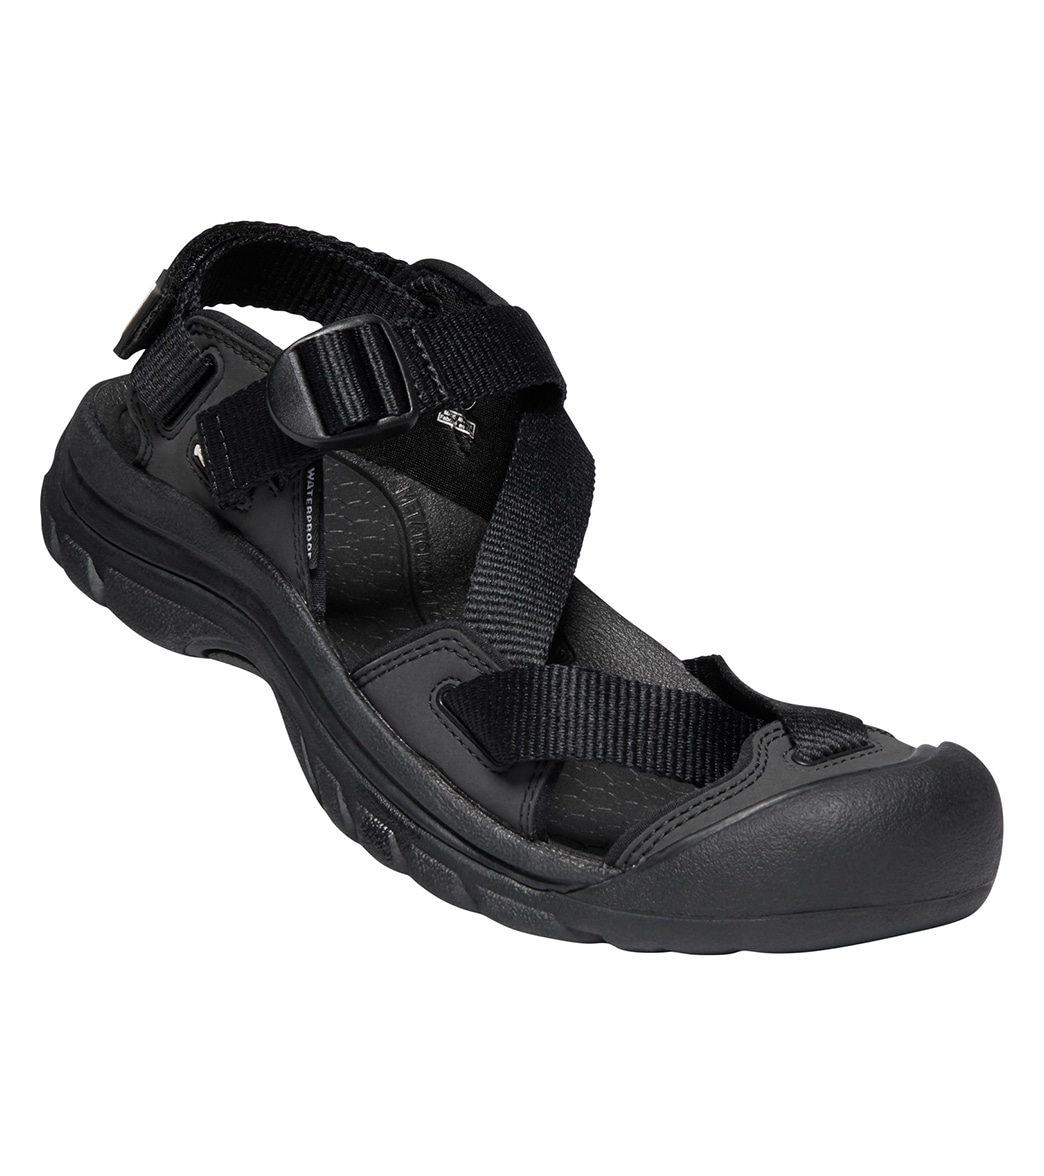 Keen Women's Zerraport Ii Water Shoes - Black/Black 10 - Swimoutlet.com